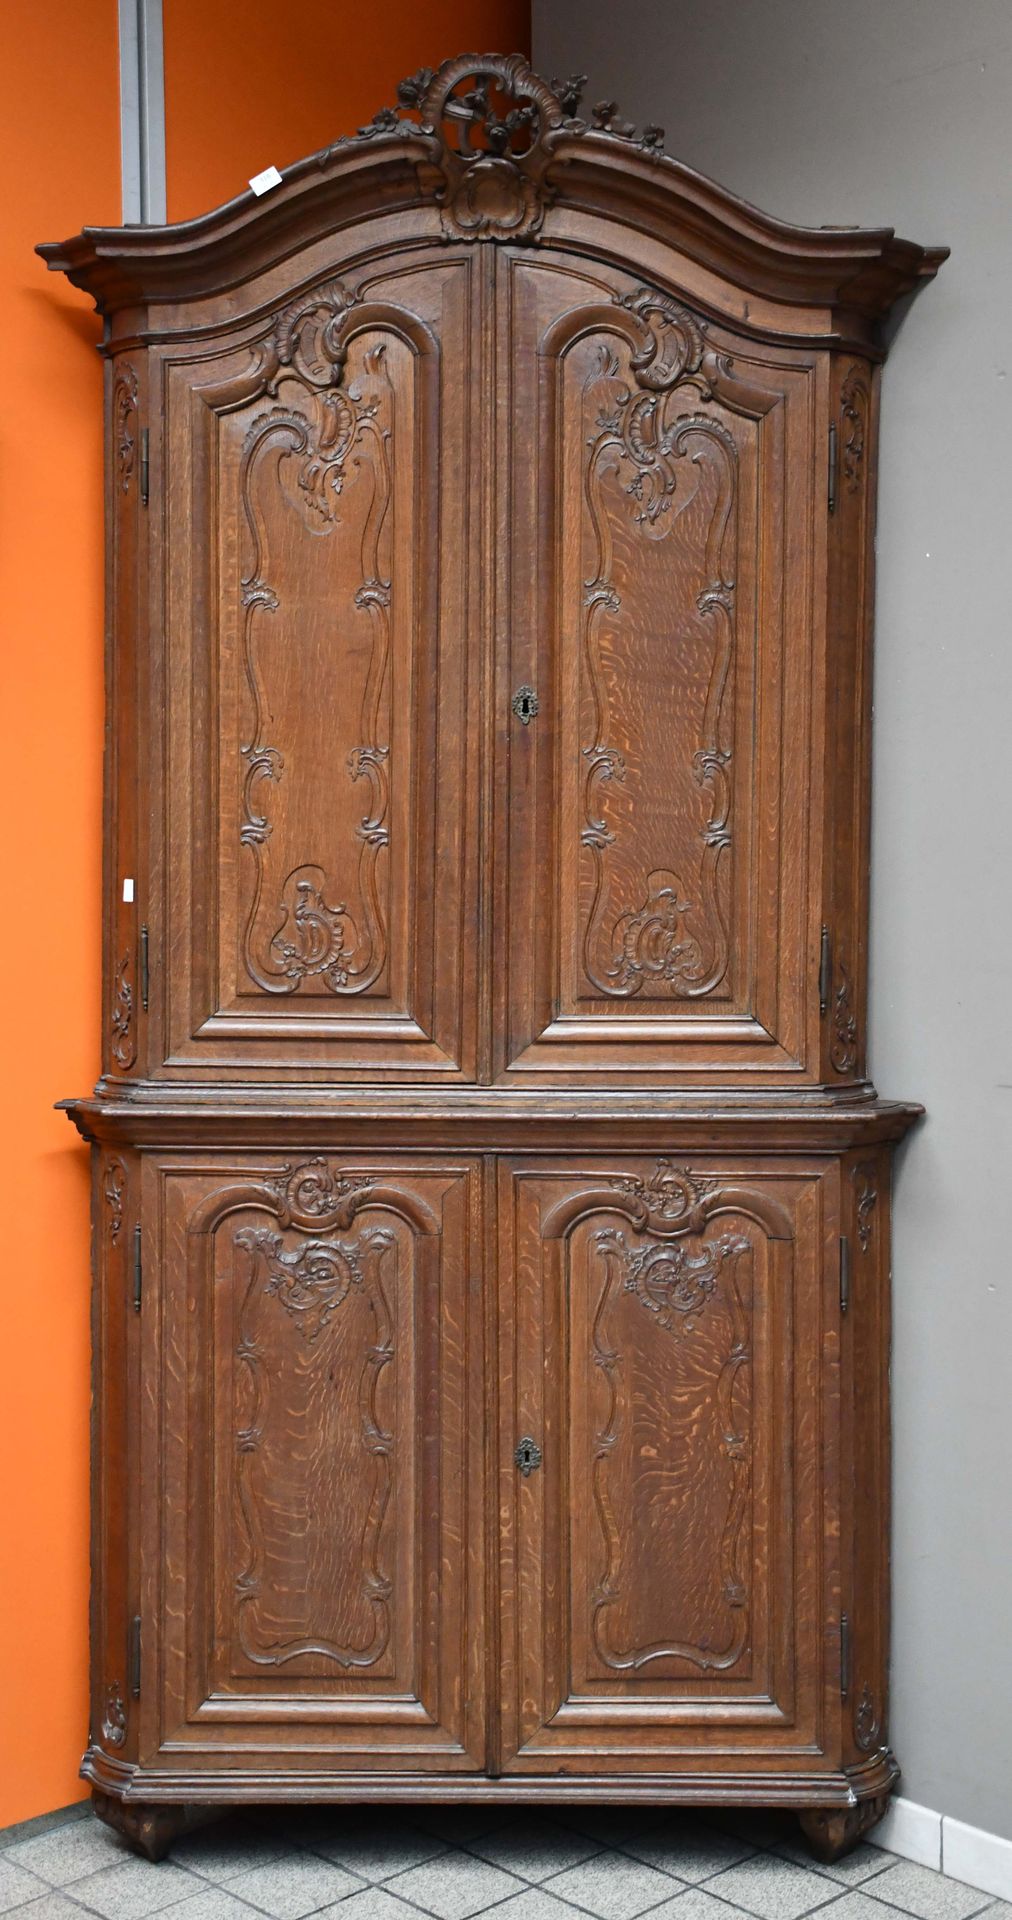 Null 极好的橡木精雕角柜，底部和顶部开有两个完整的门，侧面呈圆形 - 列日，18世纪，摄政时期

高度：247厘米。